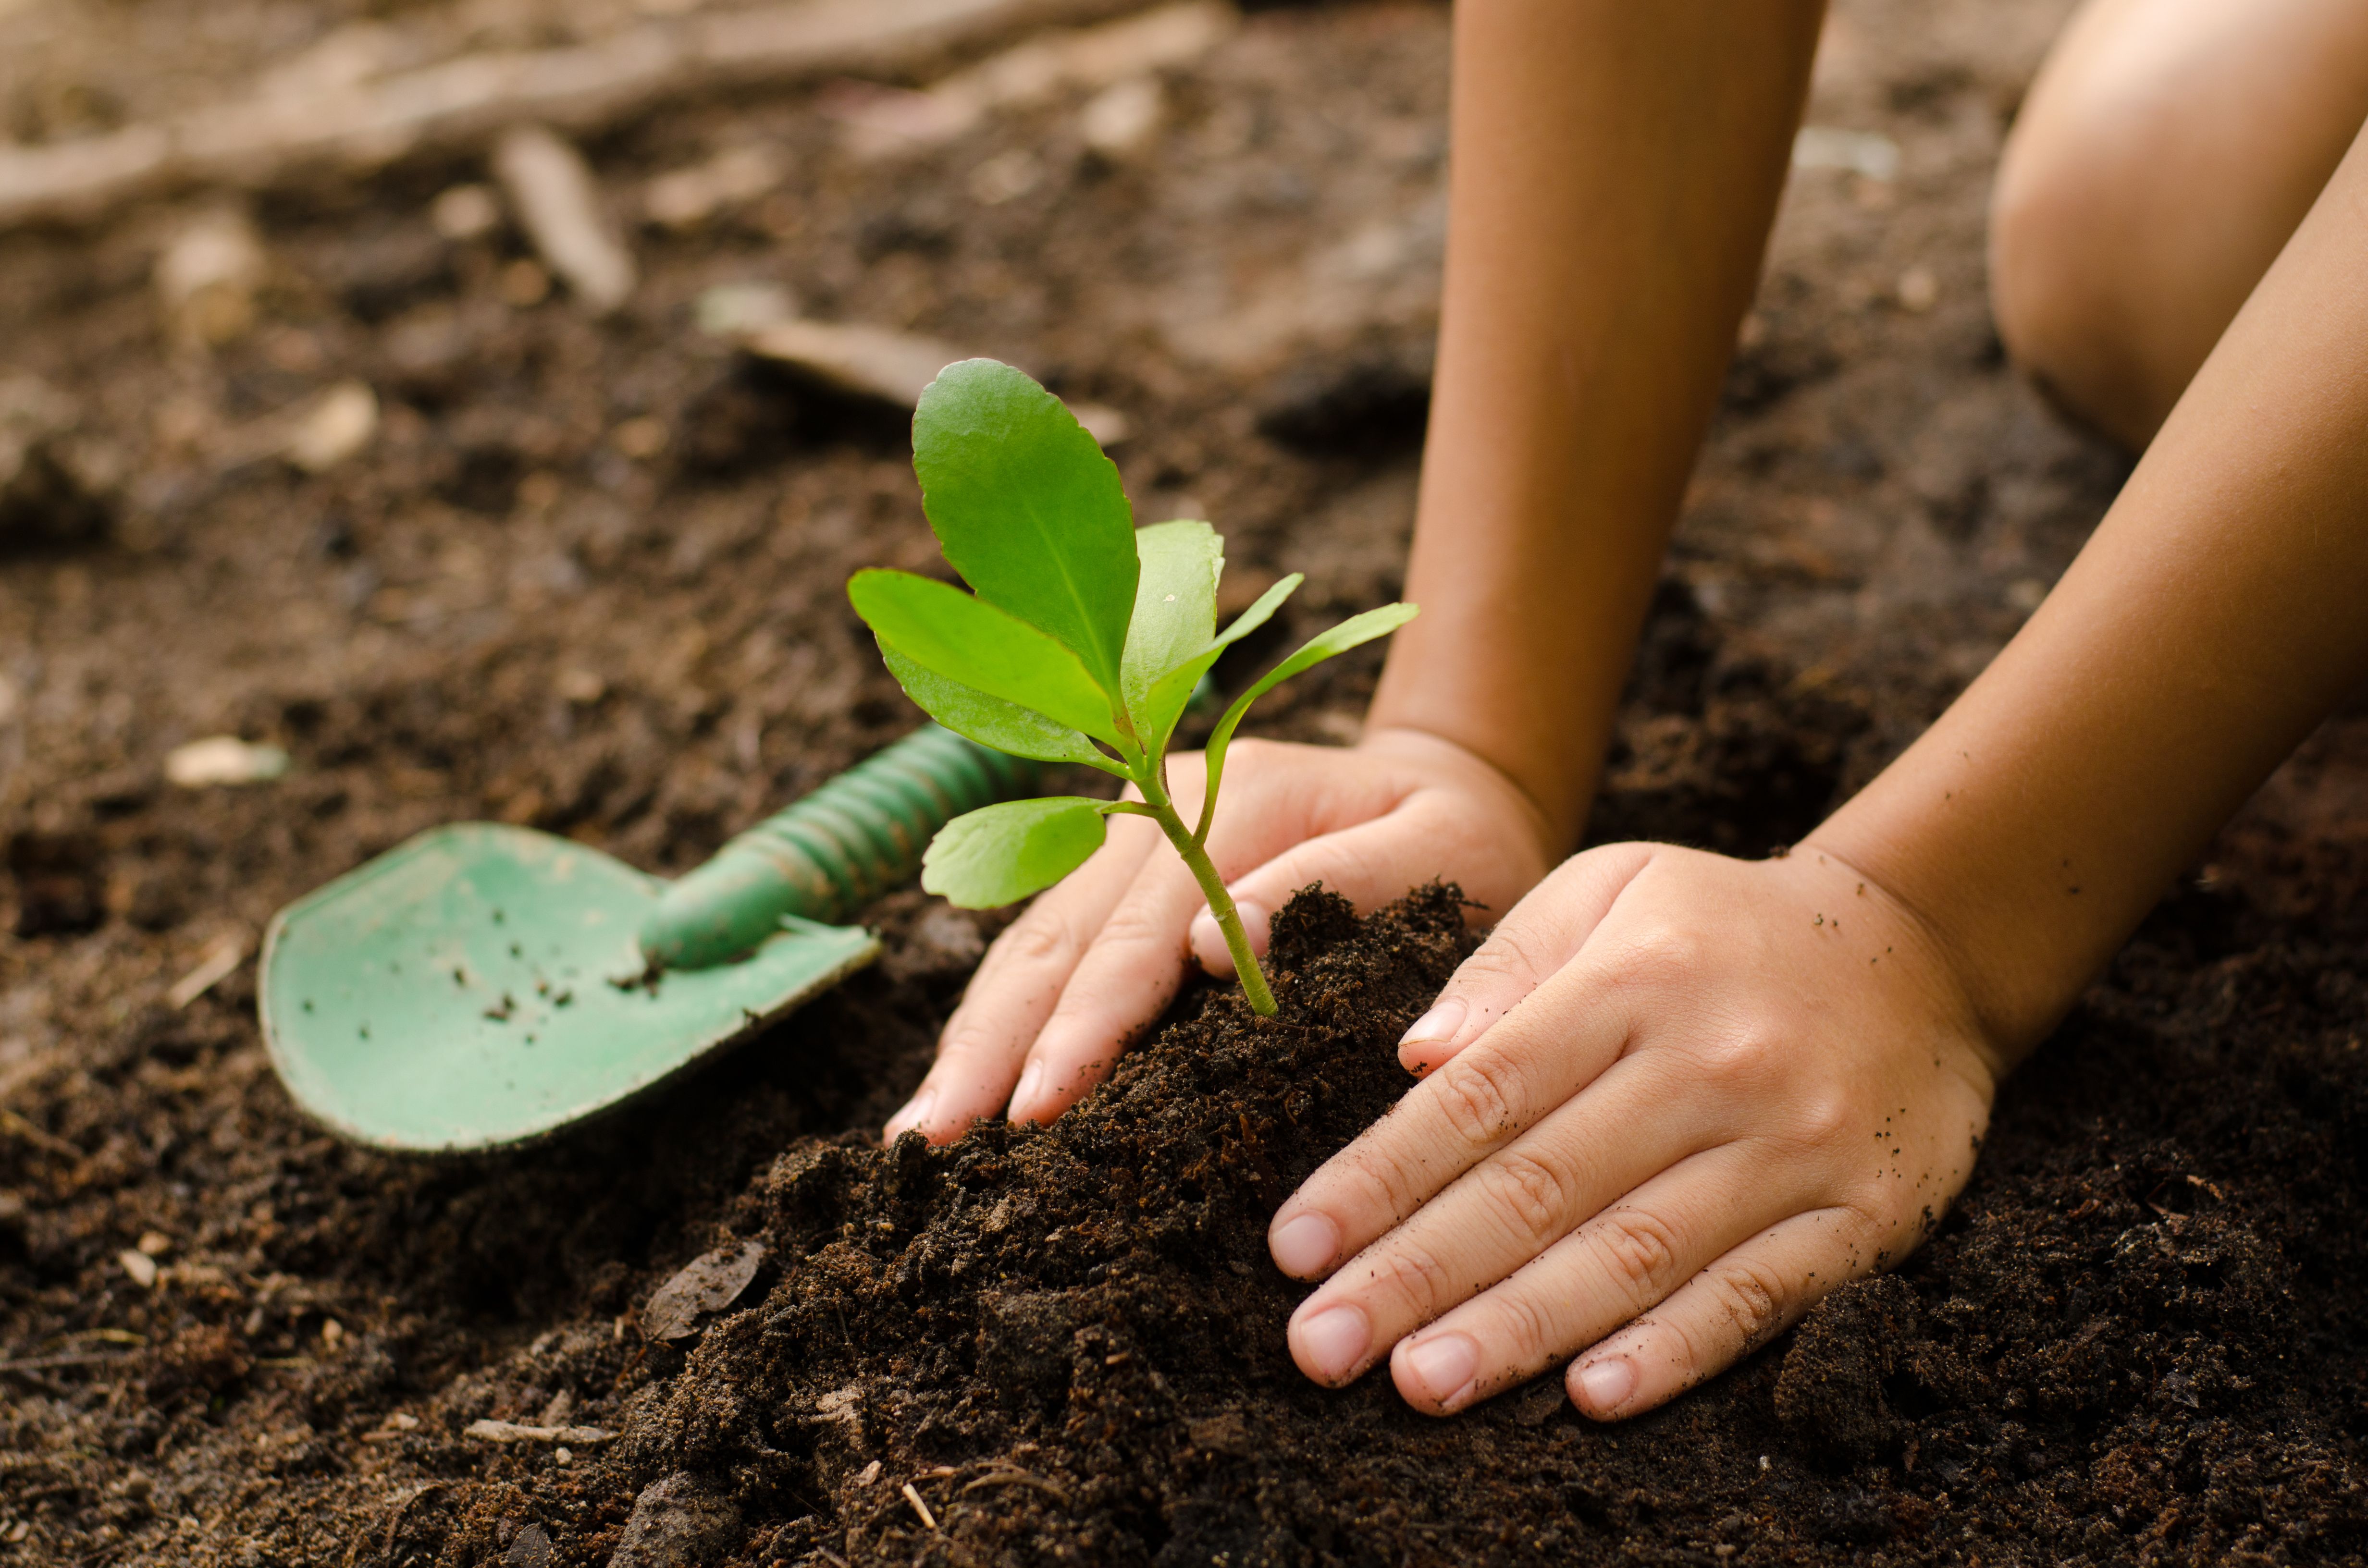 Détail d'une main plantant une plante grasse dans la terre fraîche.